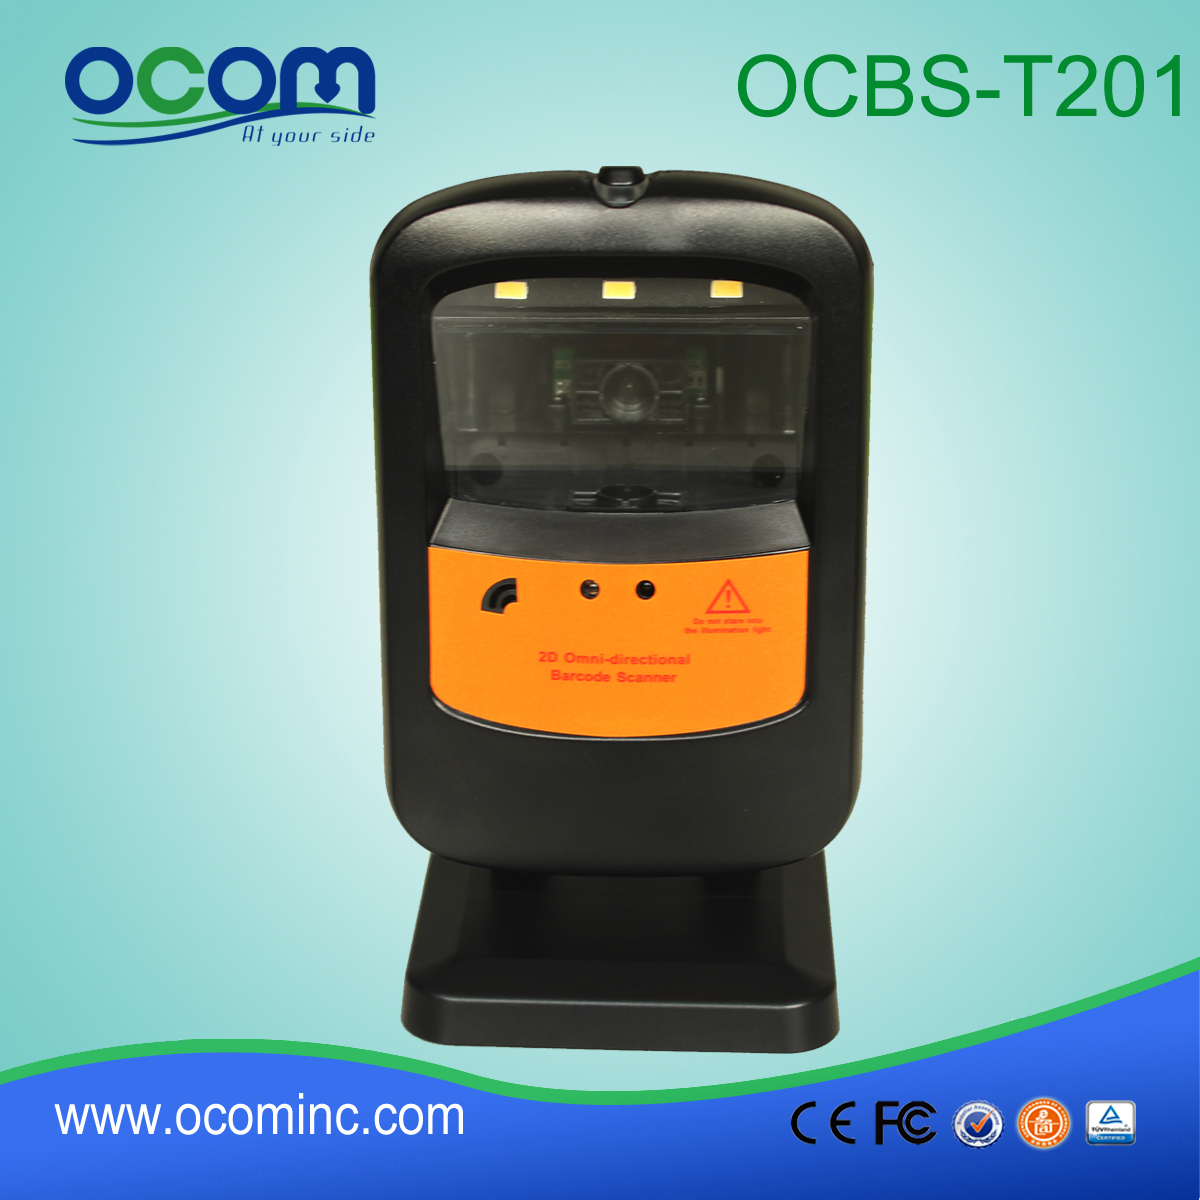 2D Barcode Scanner Module met gestage stand (OCBS-T201)